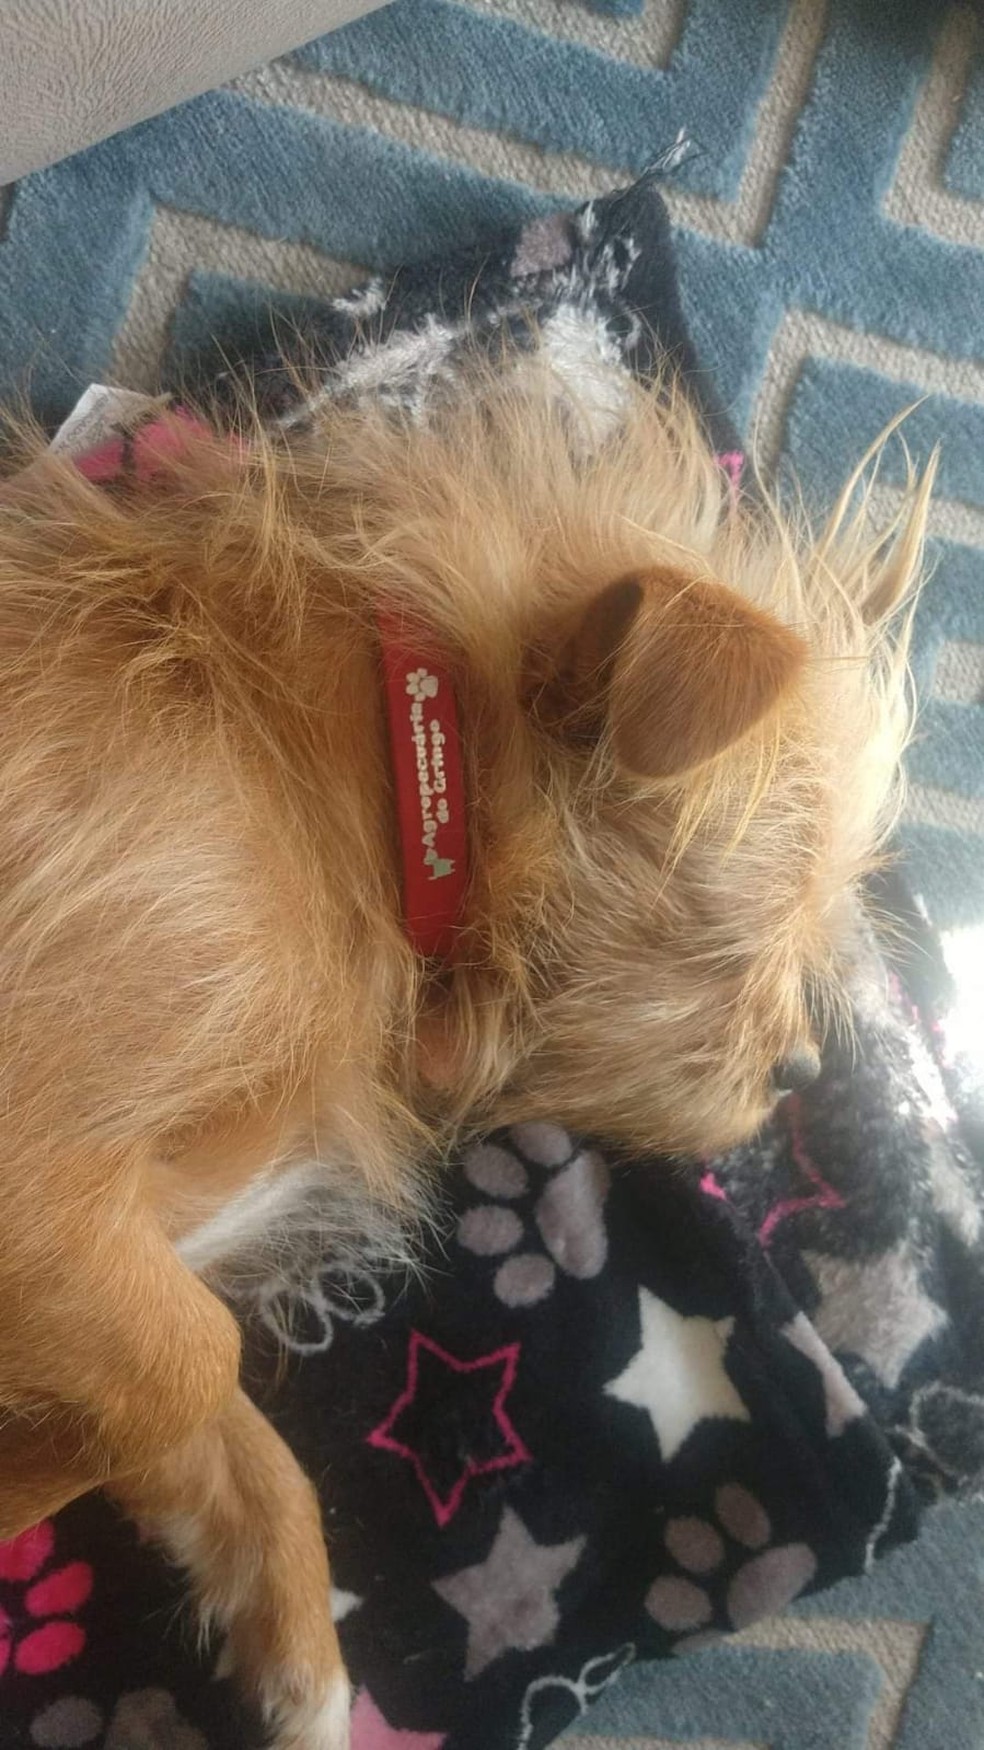 O cão usa uma coleira vermelha — Foto: Arquivo Pessoal